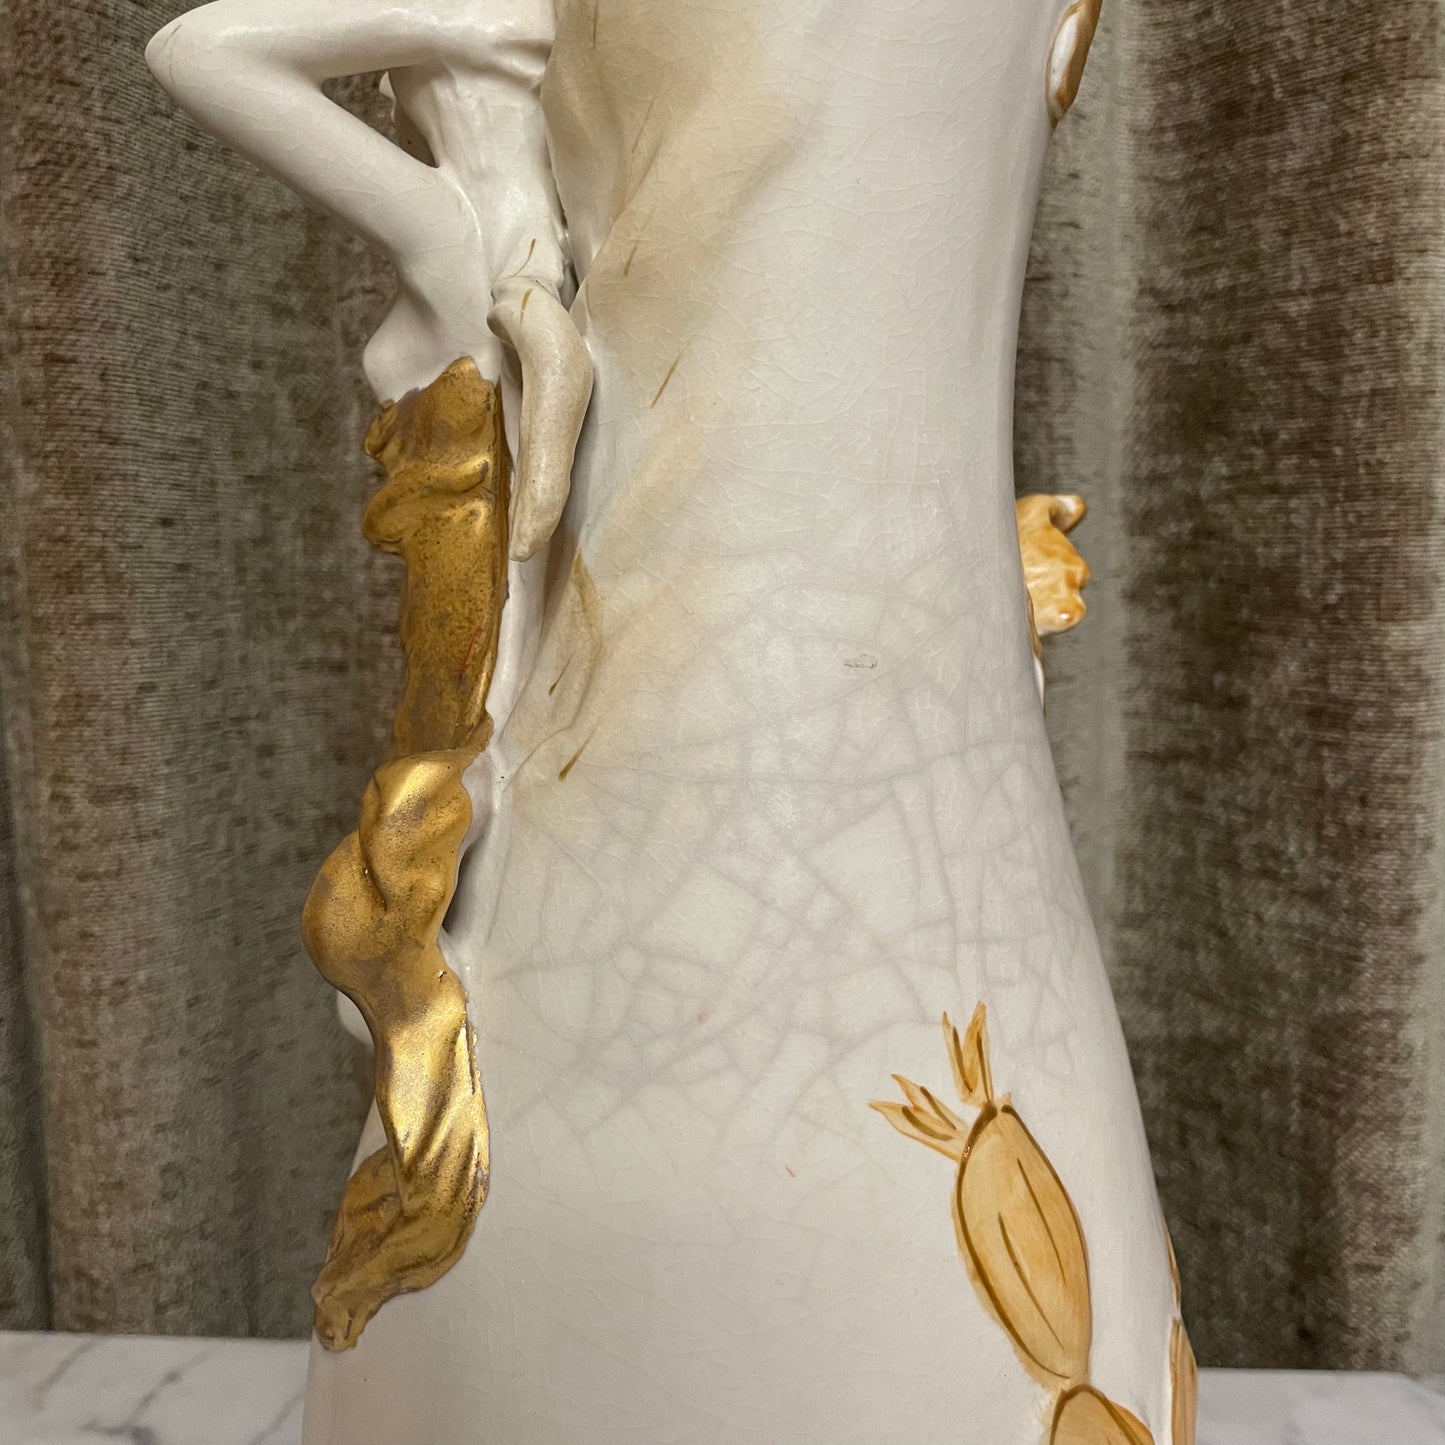 Art Nouveau Revival Royal Dux Style Vase with Nymph